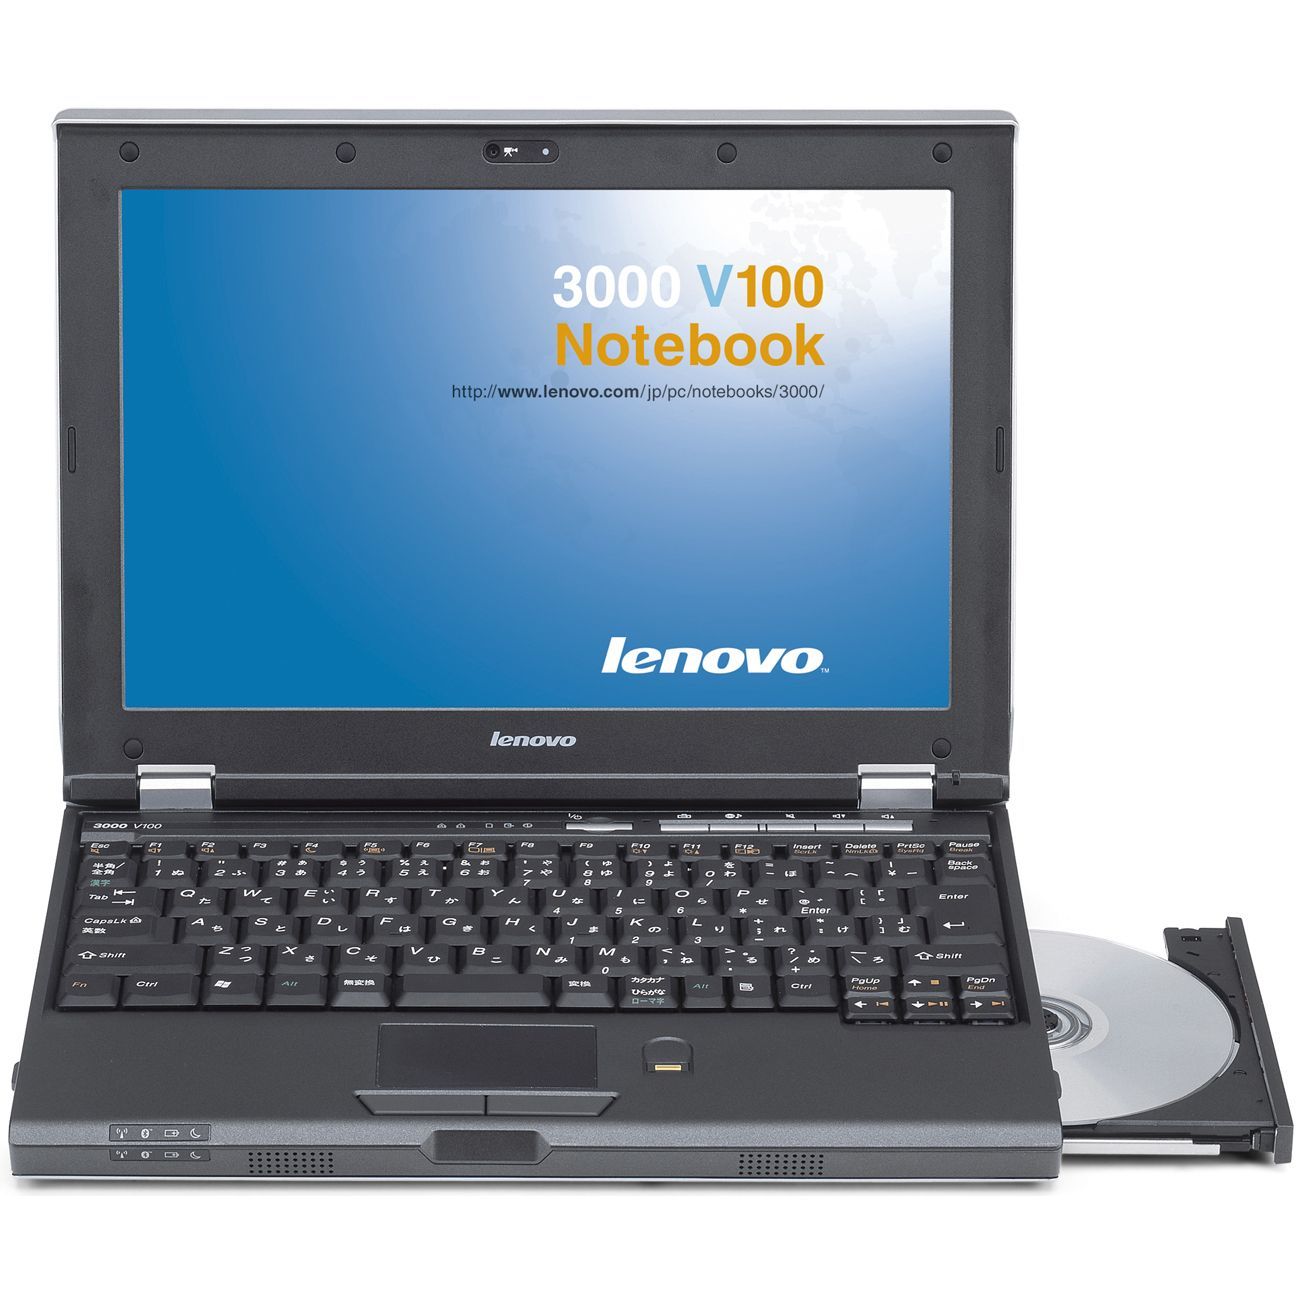 Lenovo 3000 Drivers For Xp